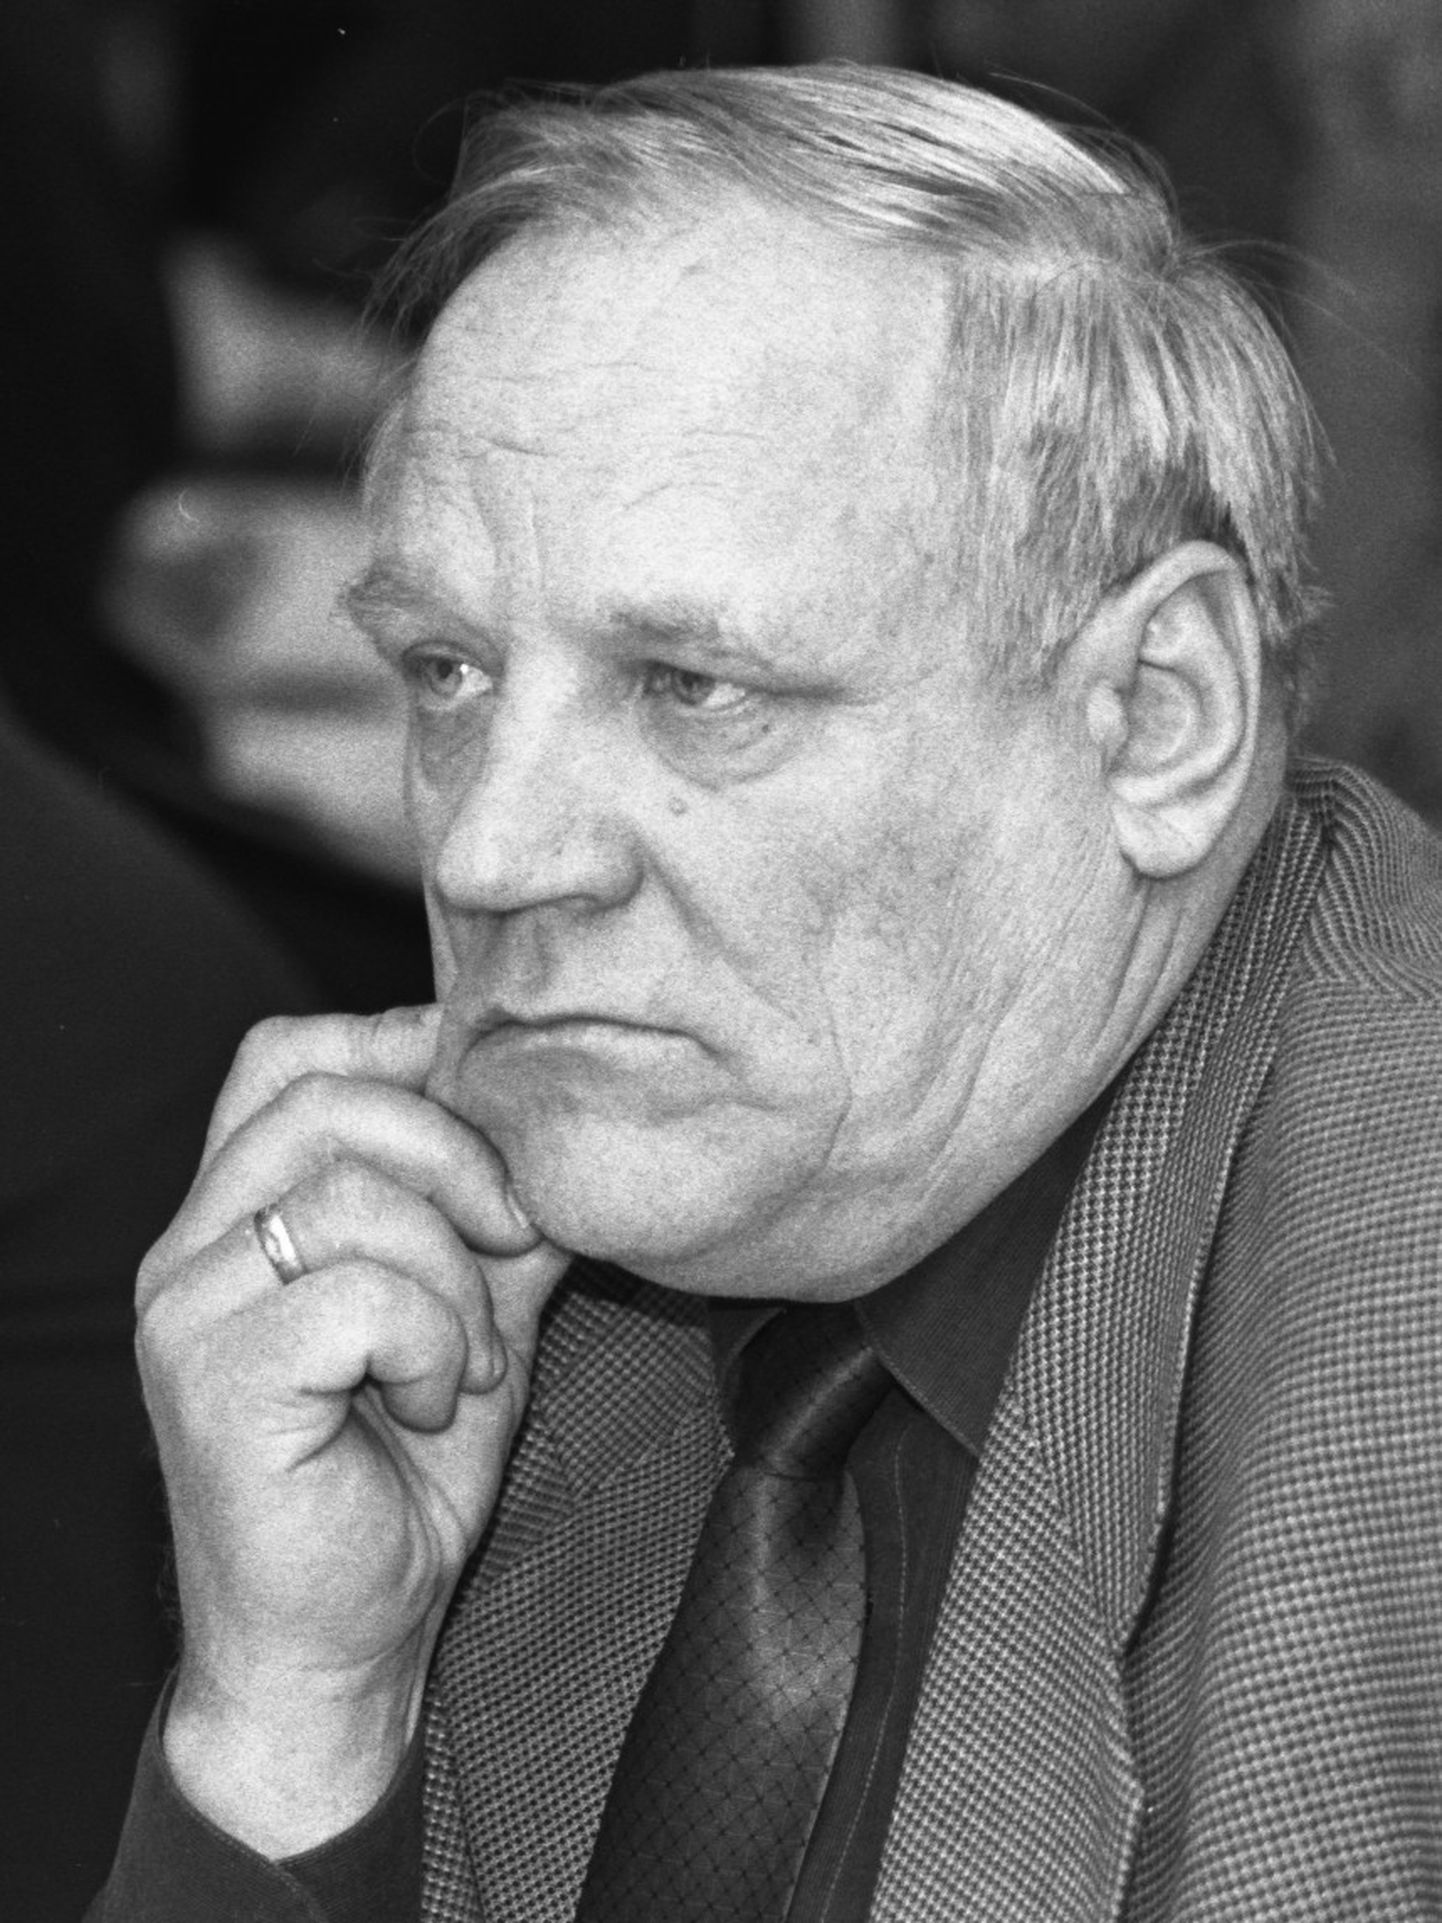 Юри Колло был мэром Кохтла-Ярве в 1999-2002 годах.